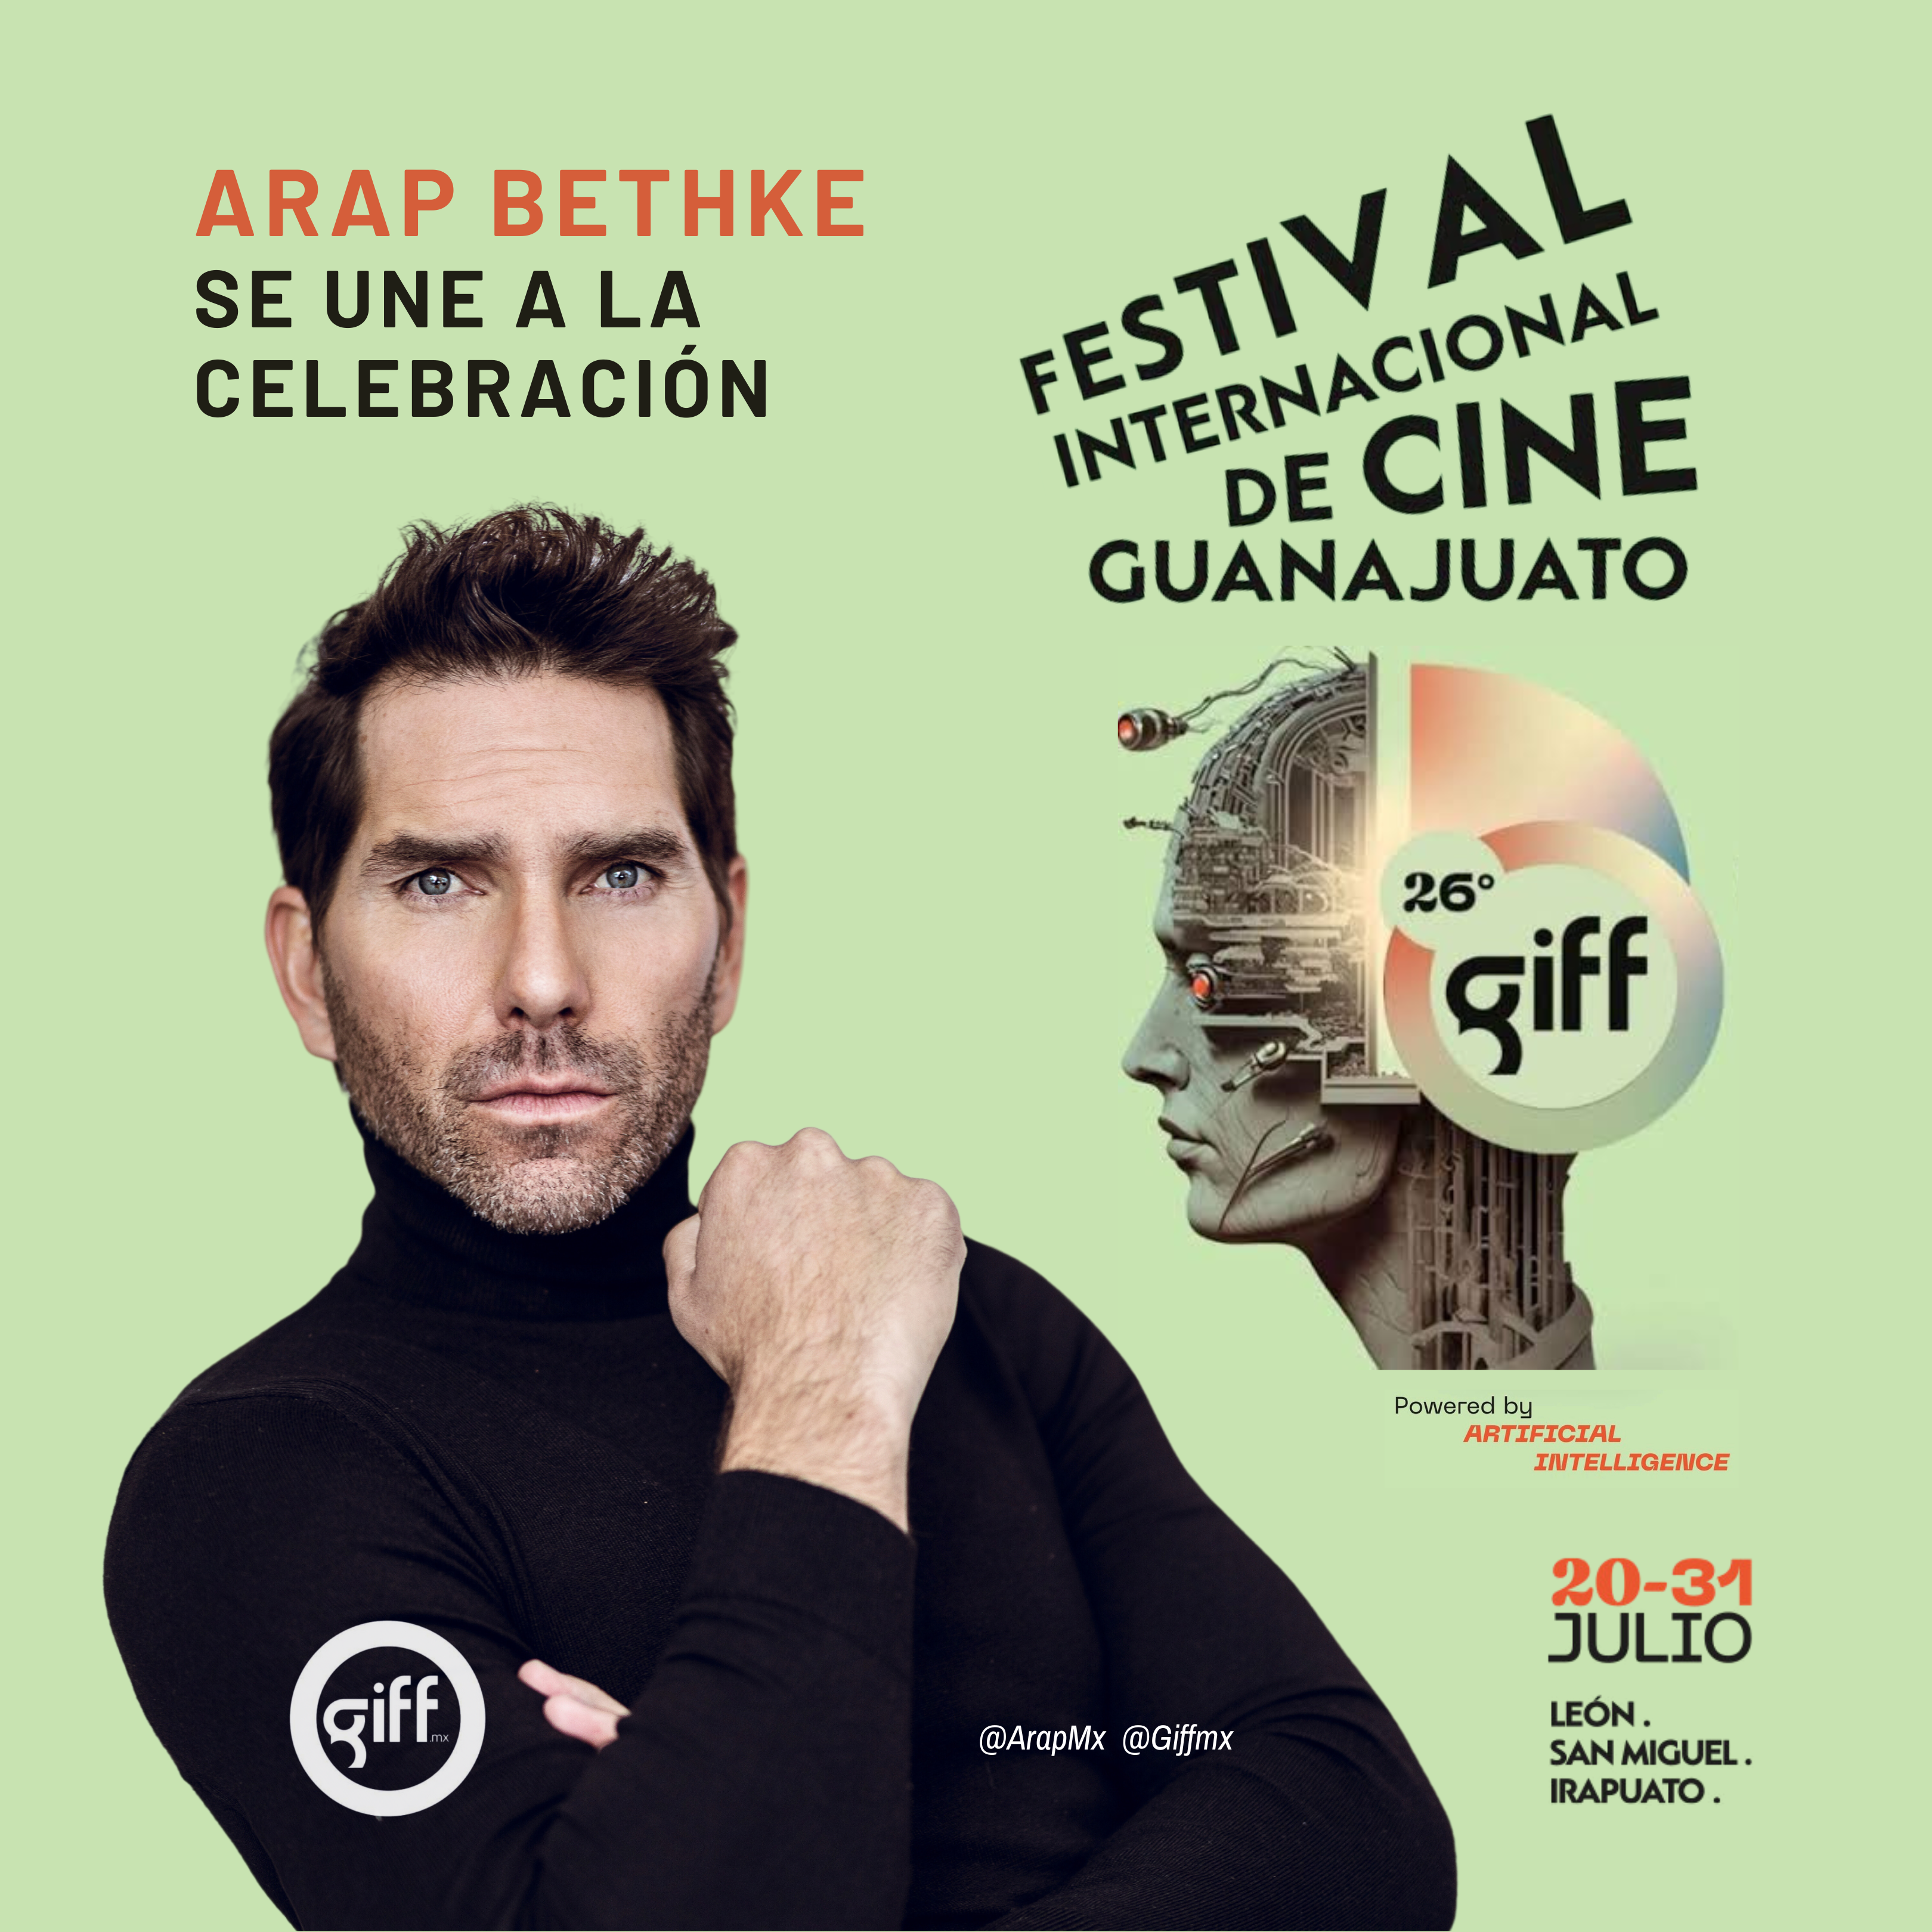 Arap Bethke atraído por el Festival de Cine de Guanajuato